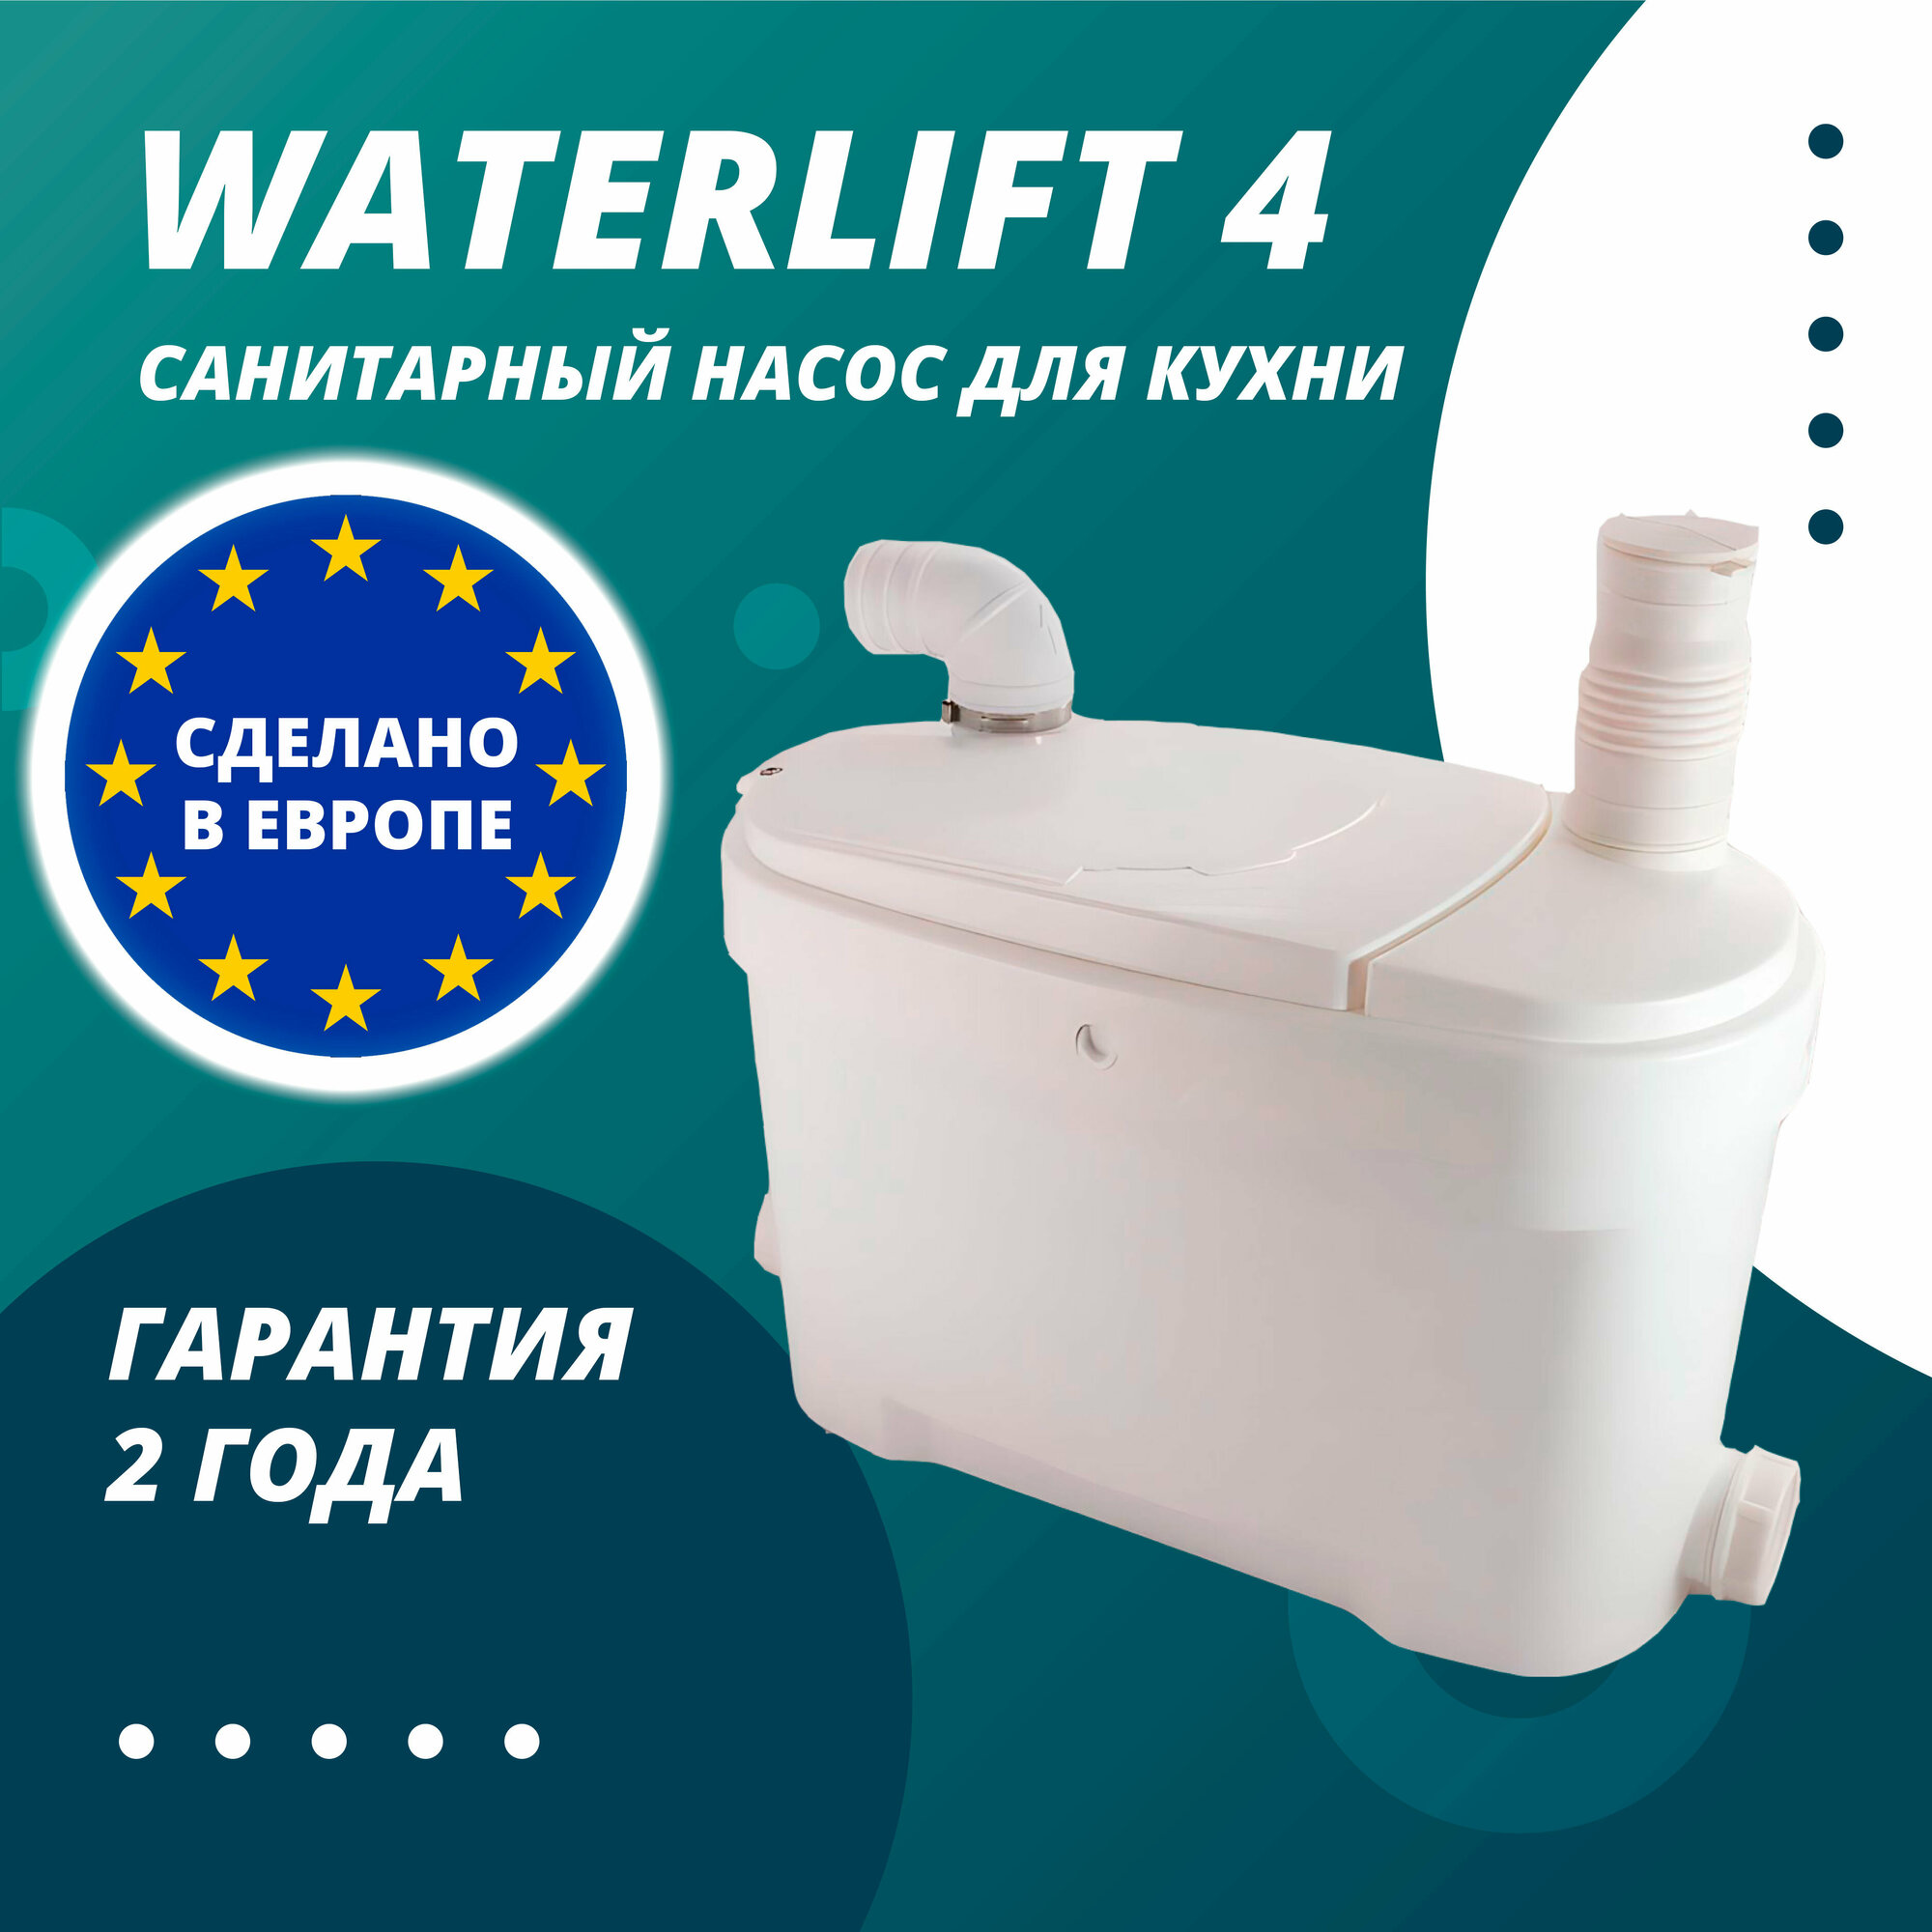 Бытовой санитарный насос Waterlift 4/ для отведения стоков от четырех сантехнических приборов